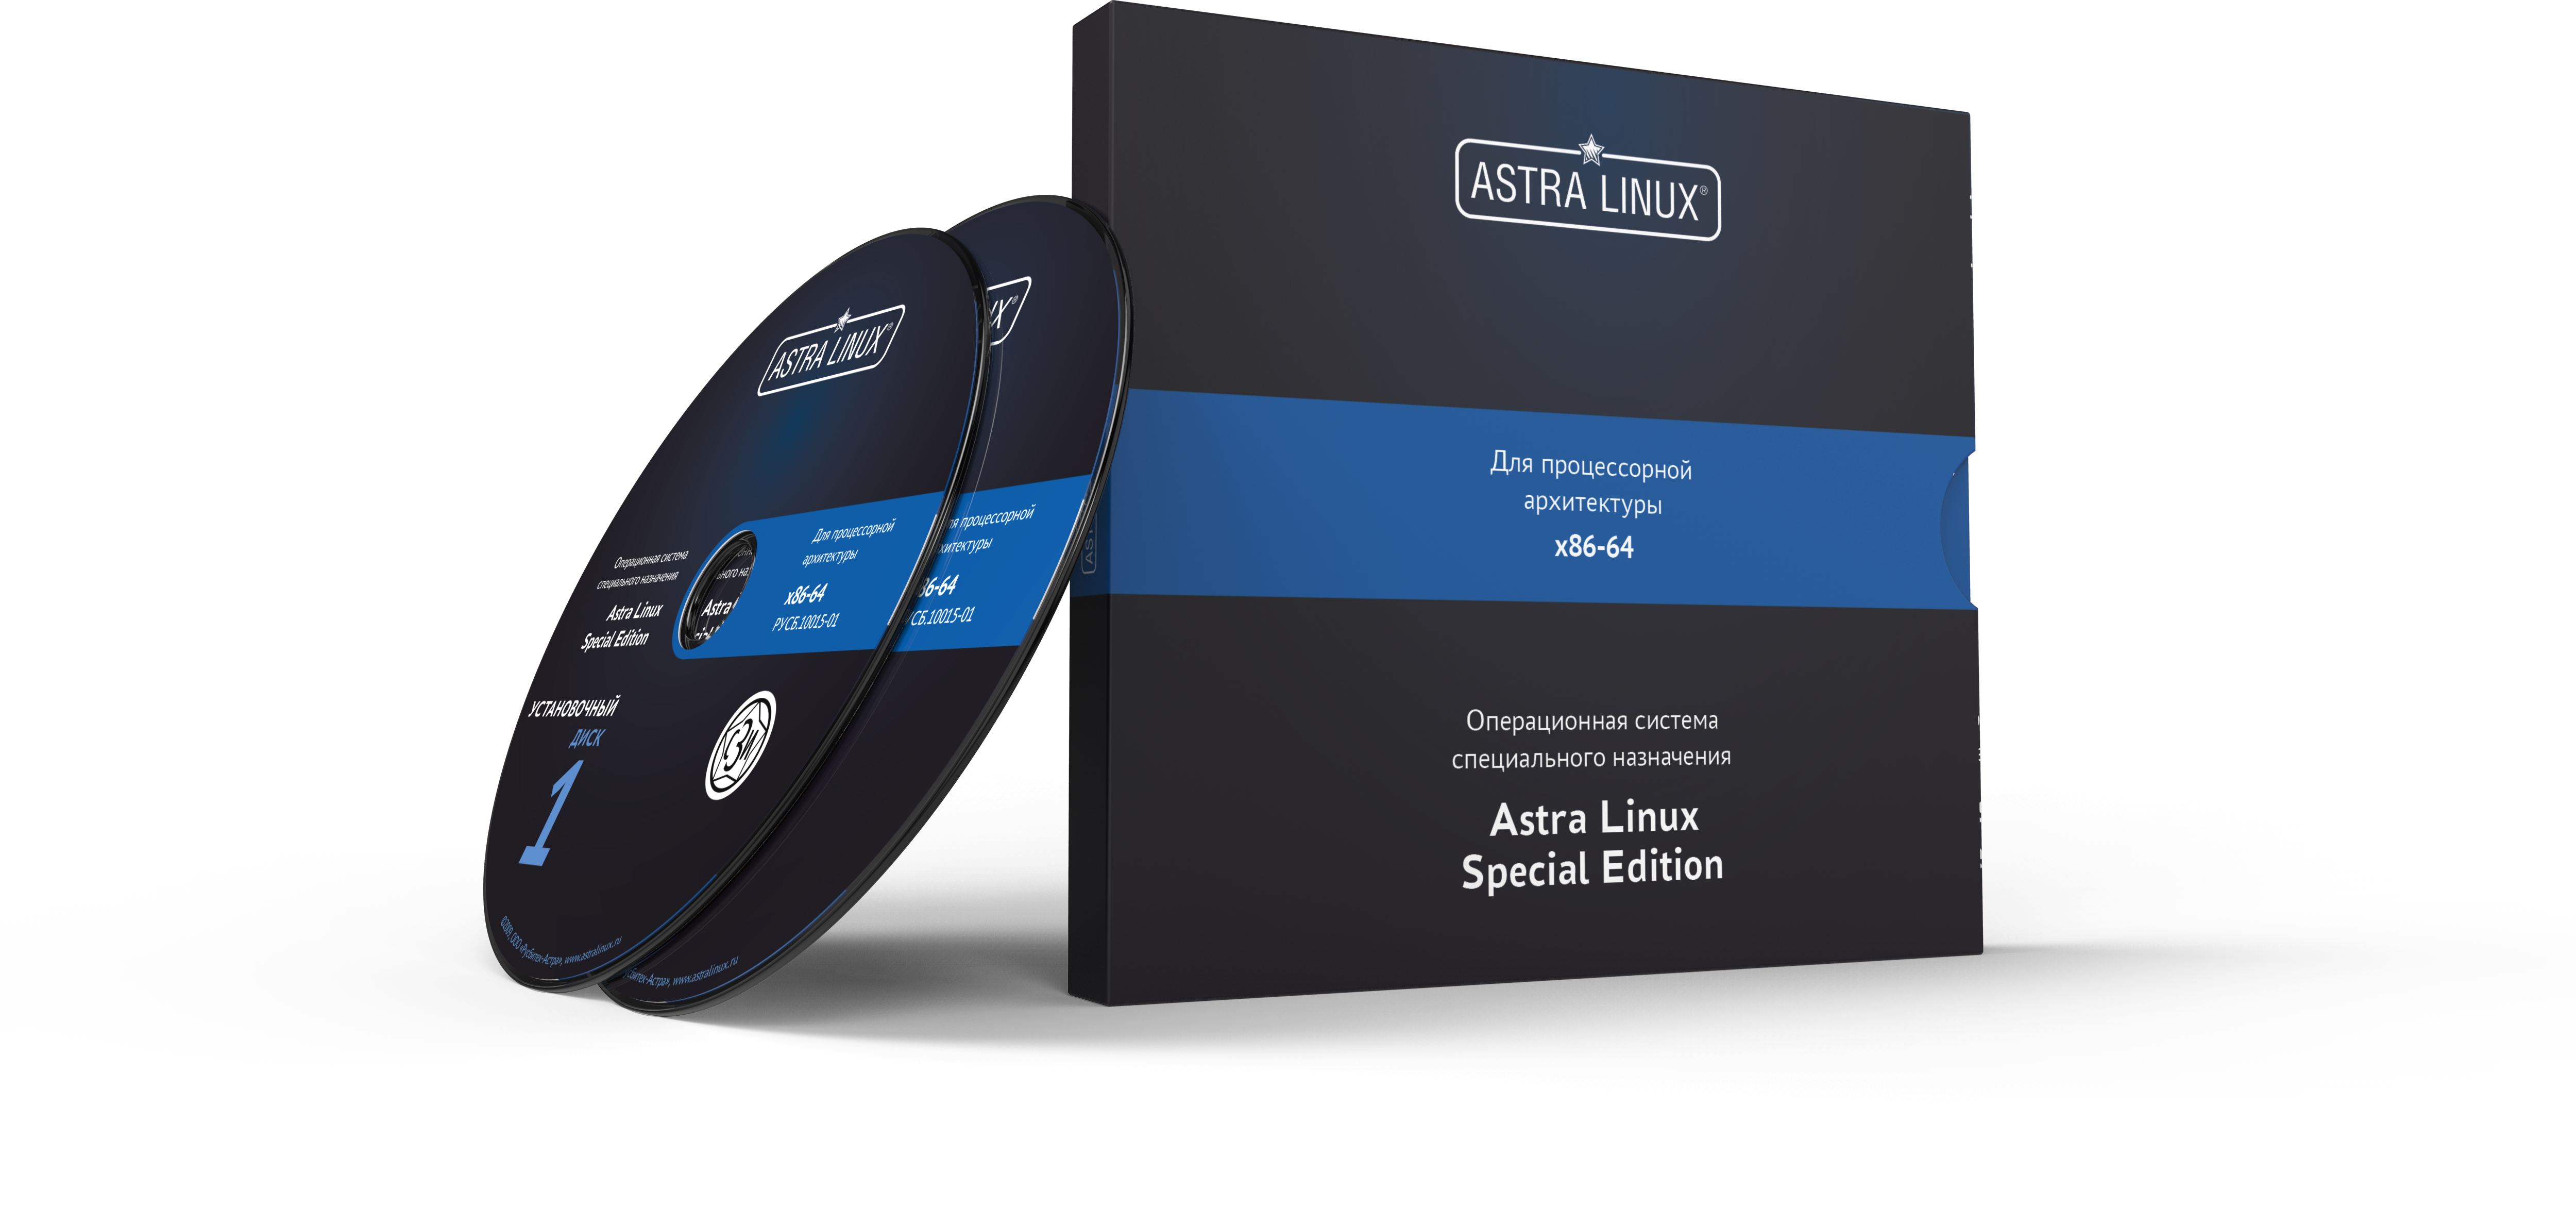 Astra Linux Special Edition 1.7 - Орел, электронный, без огр. срока, ТП "Привилегированная" на 24 мес.